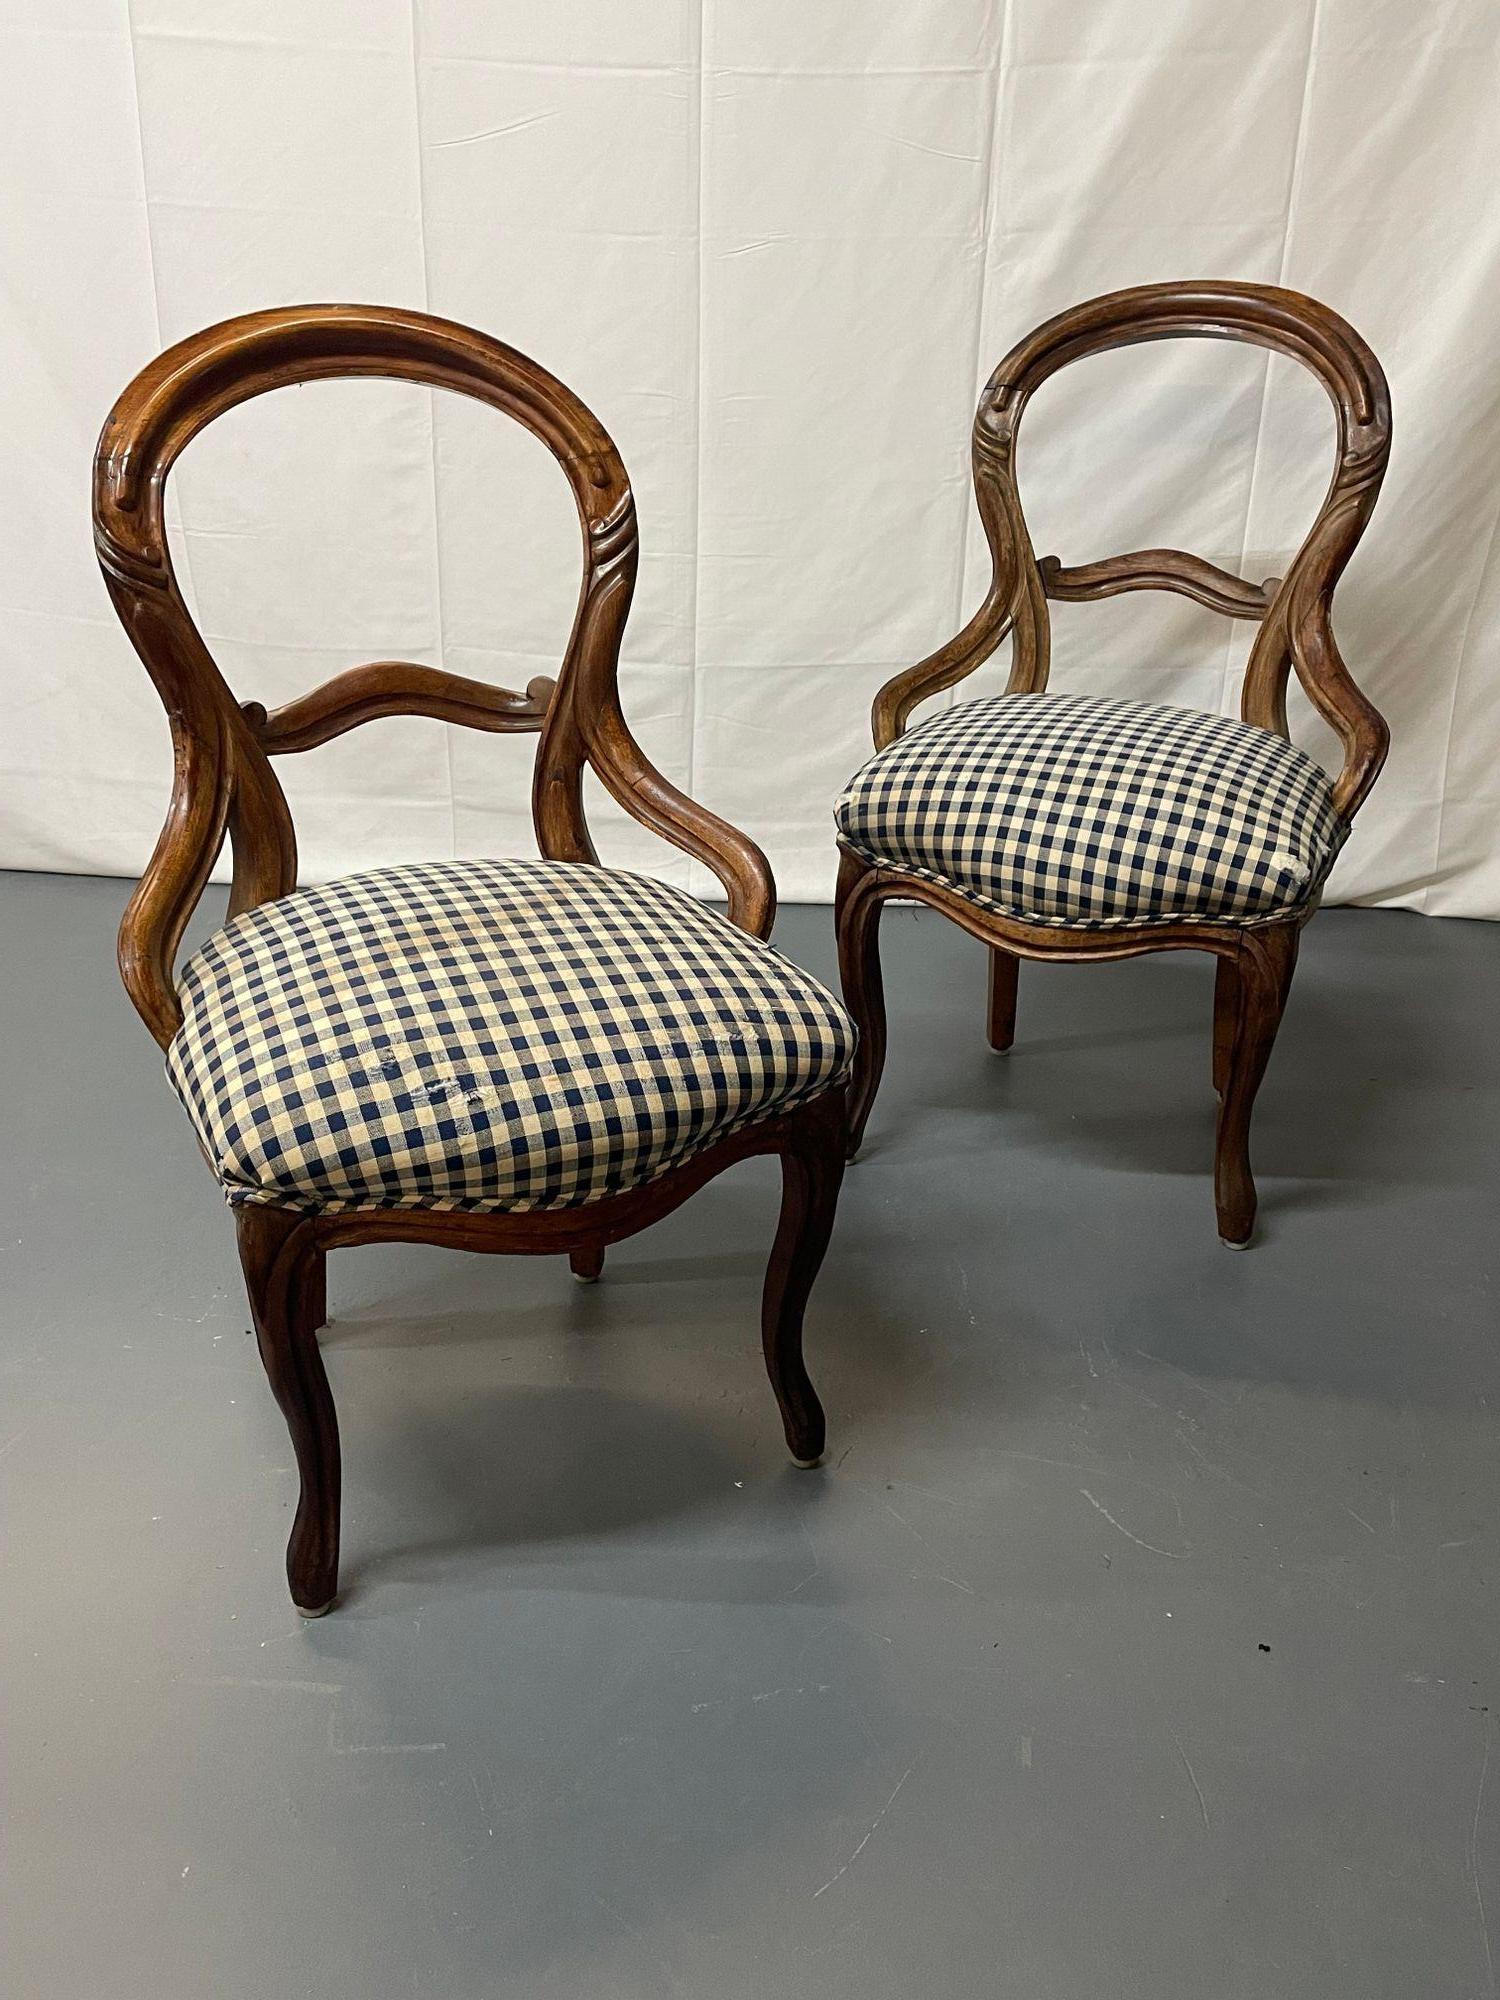 Ein Paar frühviktorianische John Henry Belter Stühle, amerikanisch.
 
Ein Paar Beistellstühle aus der viktorianischen Ära in der Art von John Henry Belter mit klassischen ovalen Rückenlehnen und geschwungenen Beinen. Diese Stücke aus dem frühen